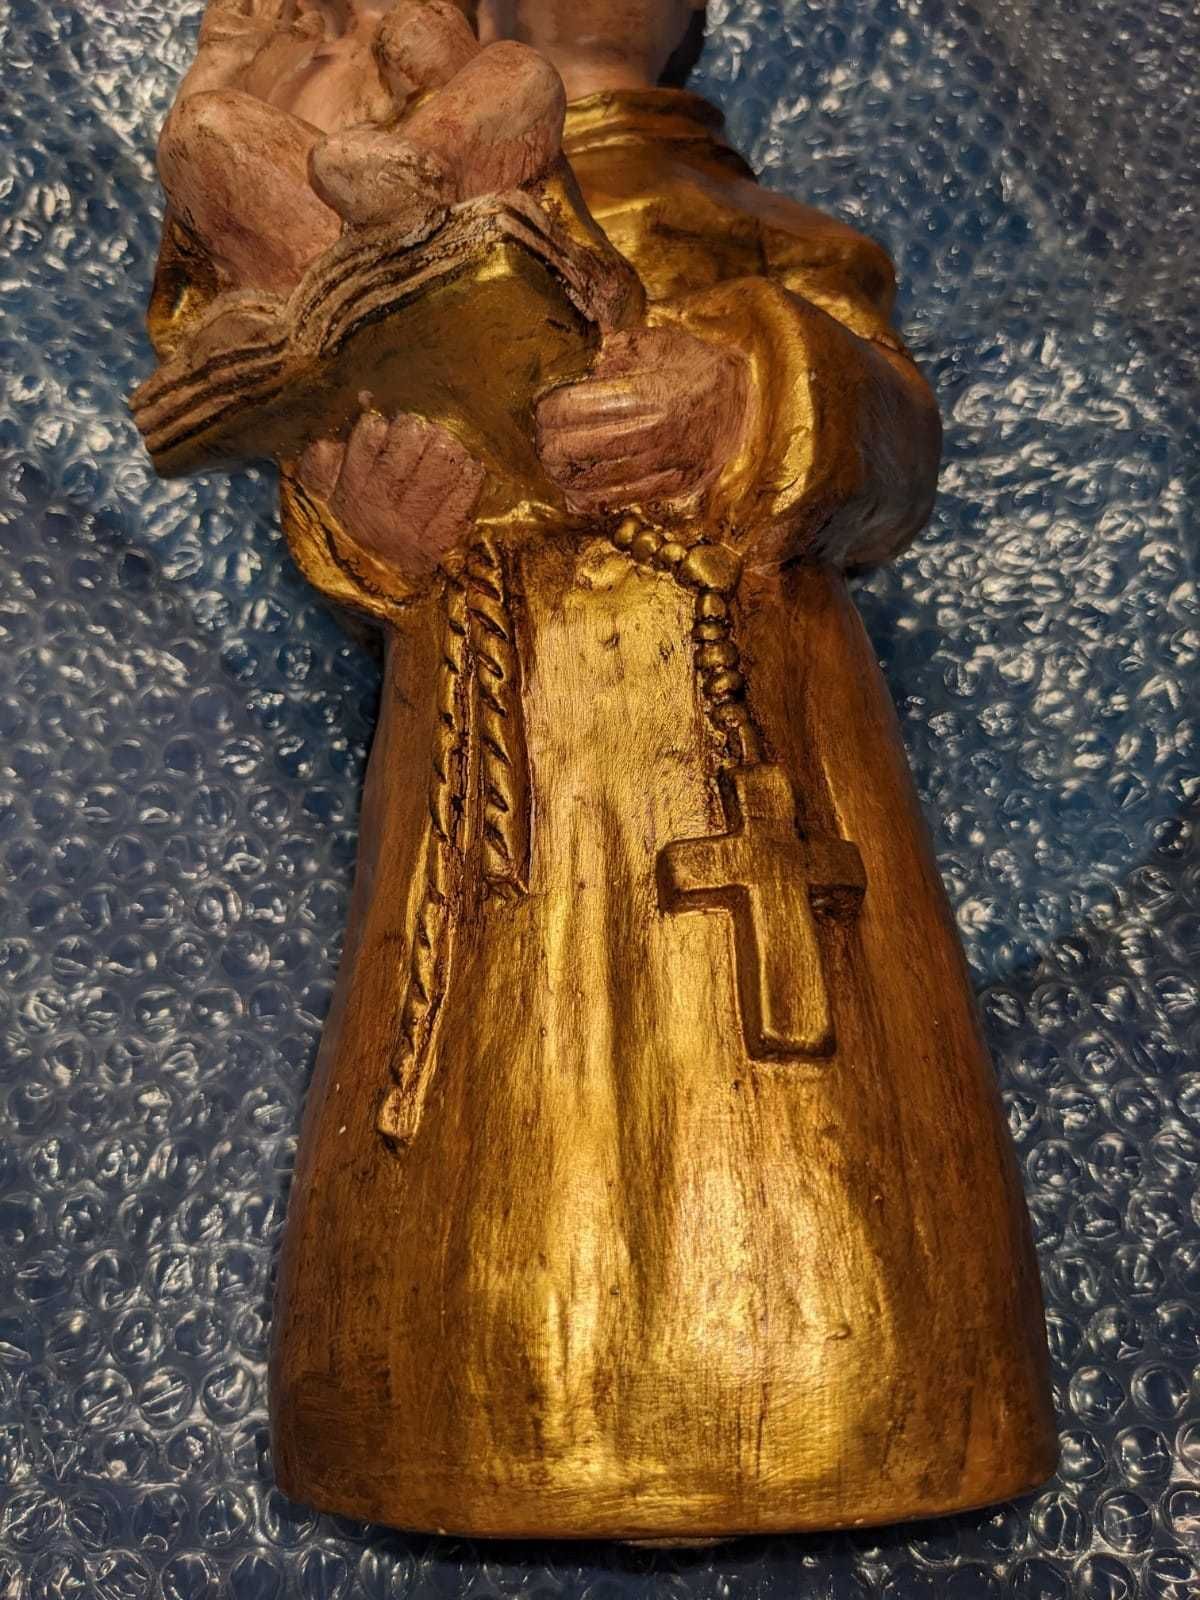 Estátua de Santo António com pintura em dourado